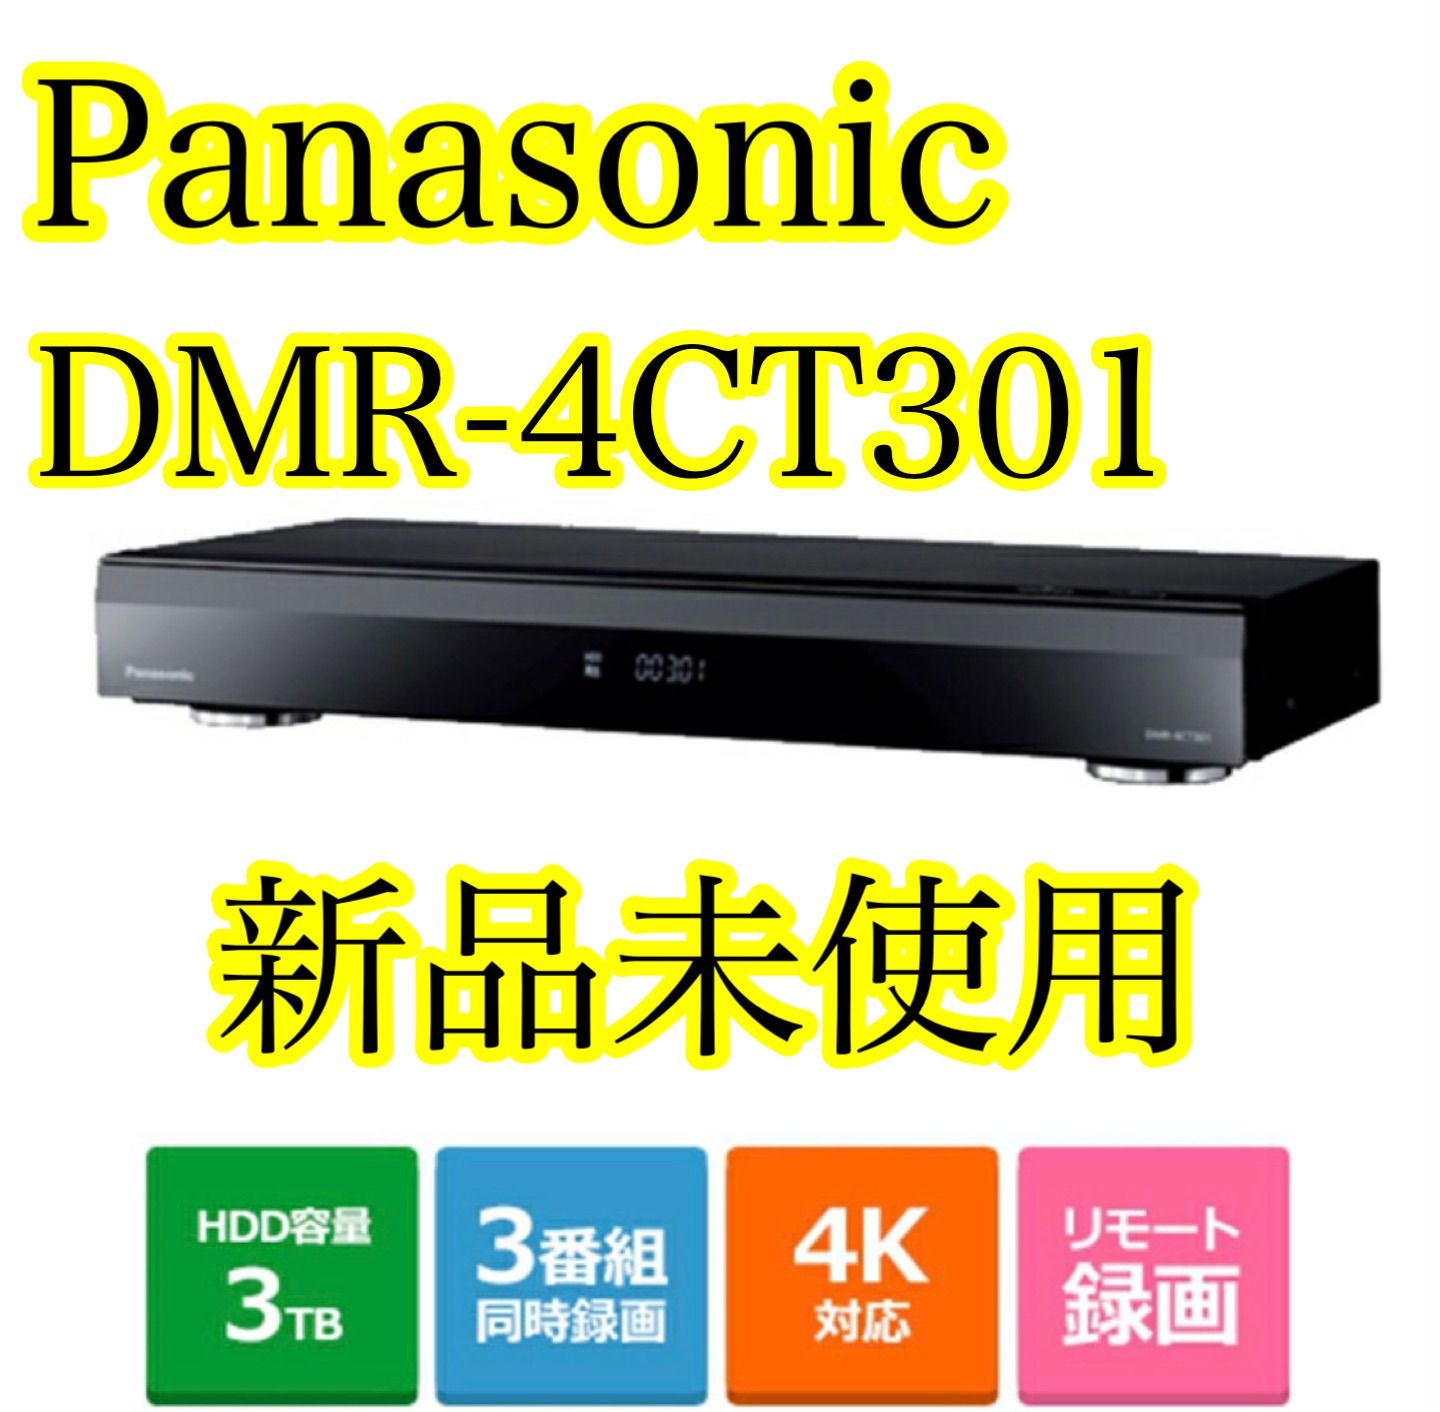 【新品未使用】ブルーレイディスクレコーダー DMR-4CT301 パナソニック